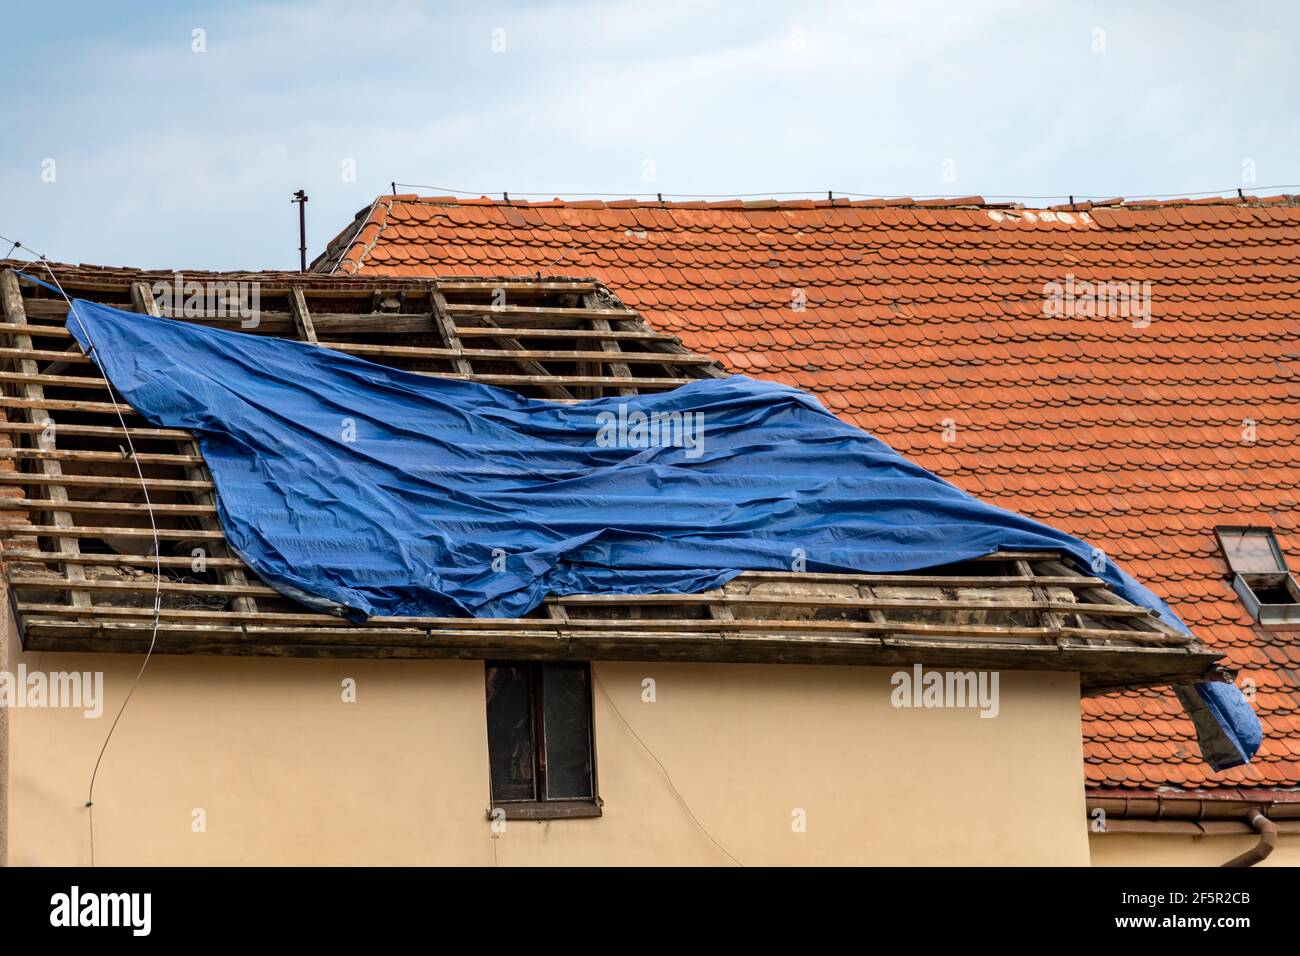 La tempesta ha danneggiato il fissaggio della copertura sul tetto.  Installazione di un telone protettivo sul tetto della casa in ricostruzione  Foto stock - Alamy